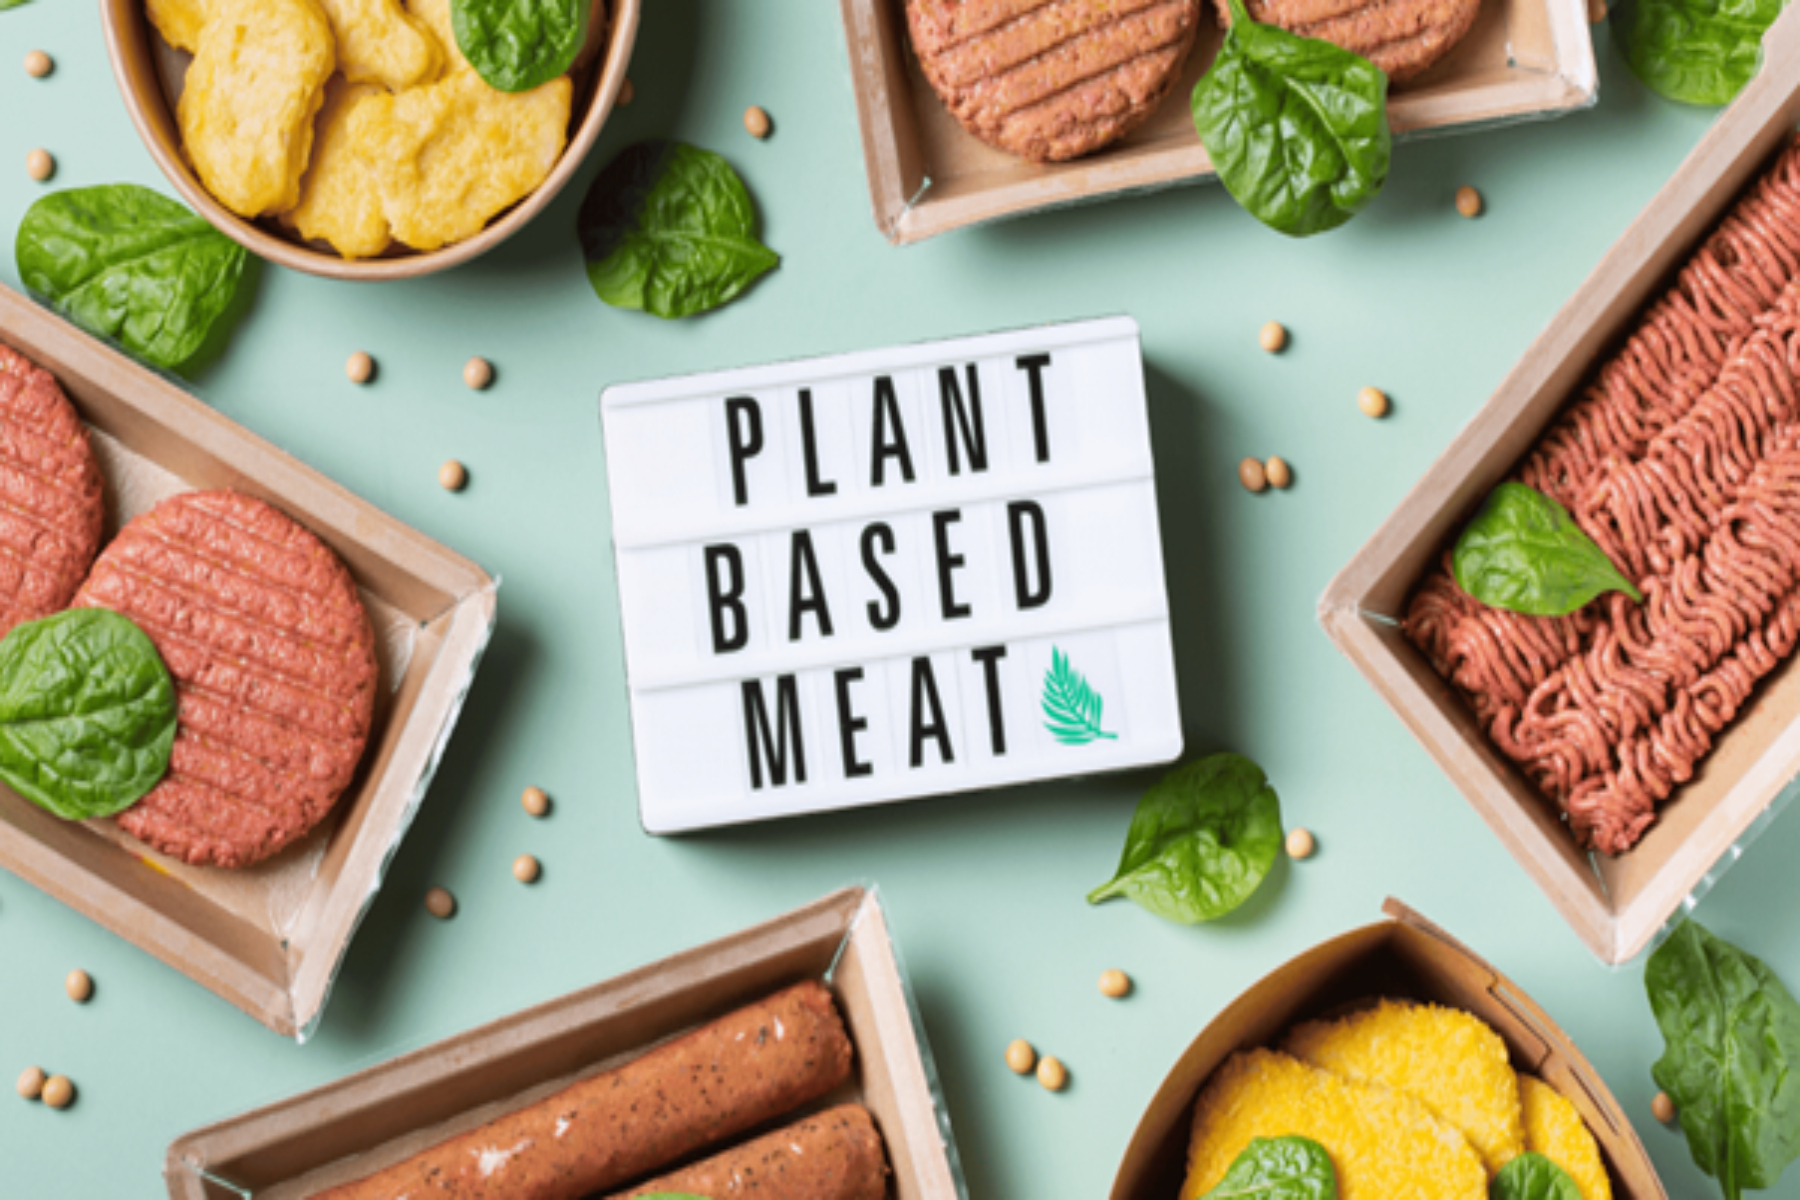 Plant based κρέας: Είναι το plant based κρέας καλύτερο από το κανονικό κρέας για την καρδιά;